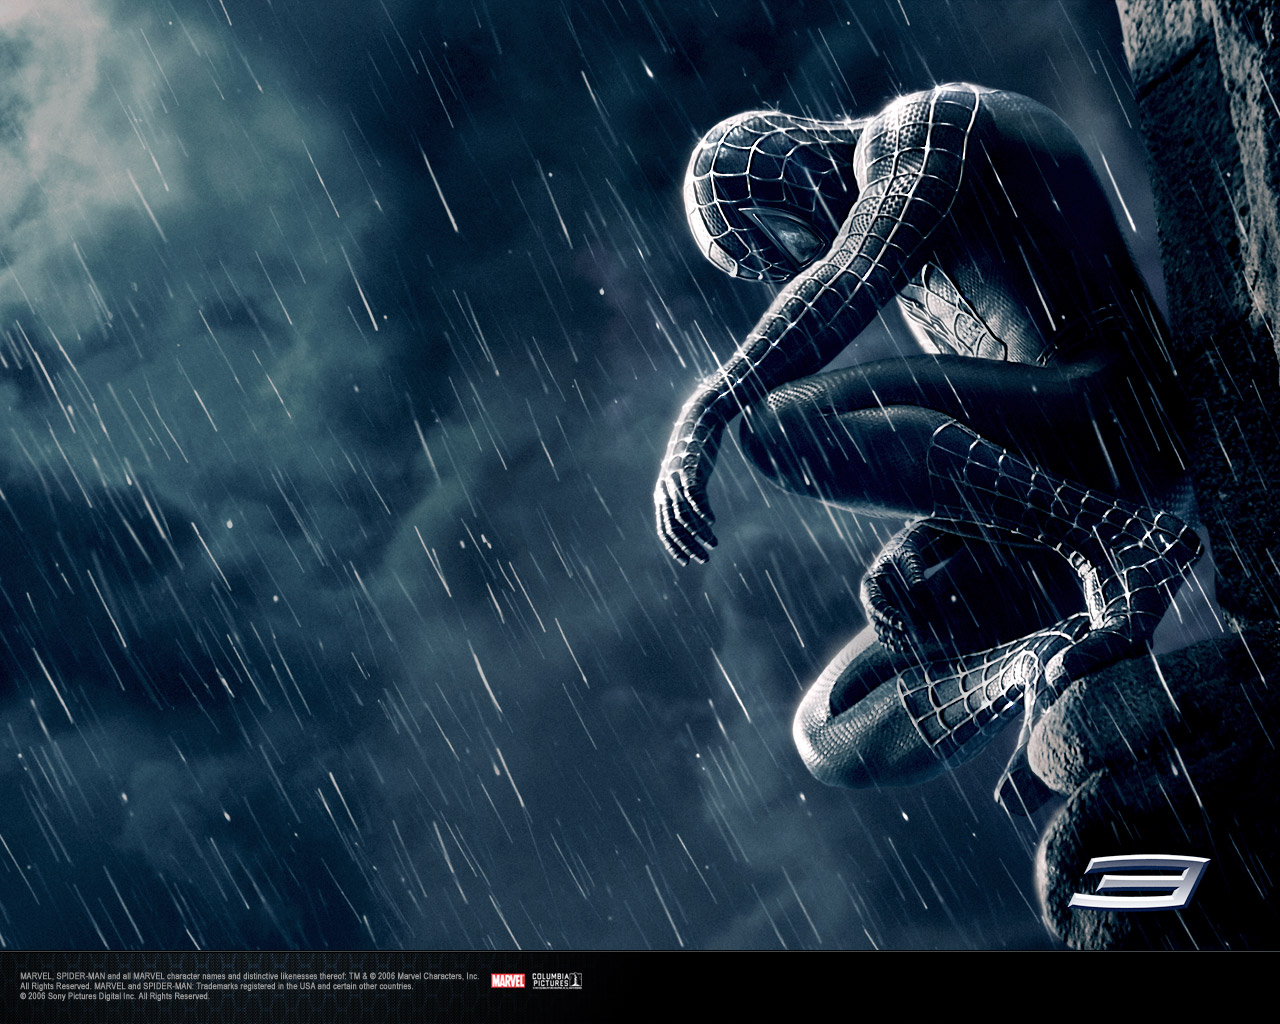 https://blogger.googleusercontent.com/img/b/R29vZ2xl/AVvXsEiqniDQFrTqJ2c_Id4FJLmEM1hzI9Hja-GvJ75LKfBb8FVbB2Tod7k3pNwo2h5vkwvbn7ZKehjCE33wWiVupeOD3v8cUi5gWCEsVUiJ8SPsqf6Ep6i1QlnCL9wIvlAT1GLR3HSyyXPIeVM/s1600/Spiderman+wallpaper+download+free+spiderman+3.jpg